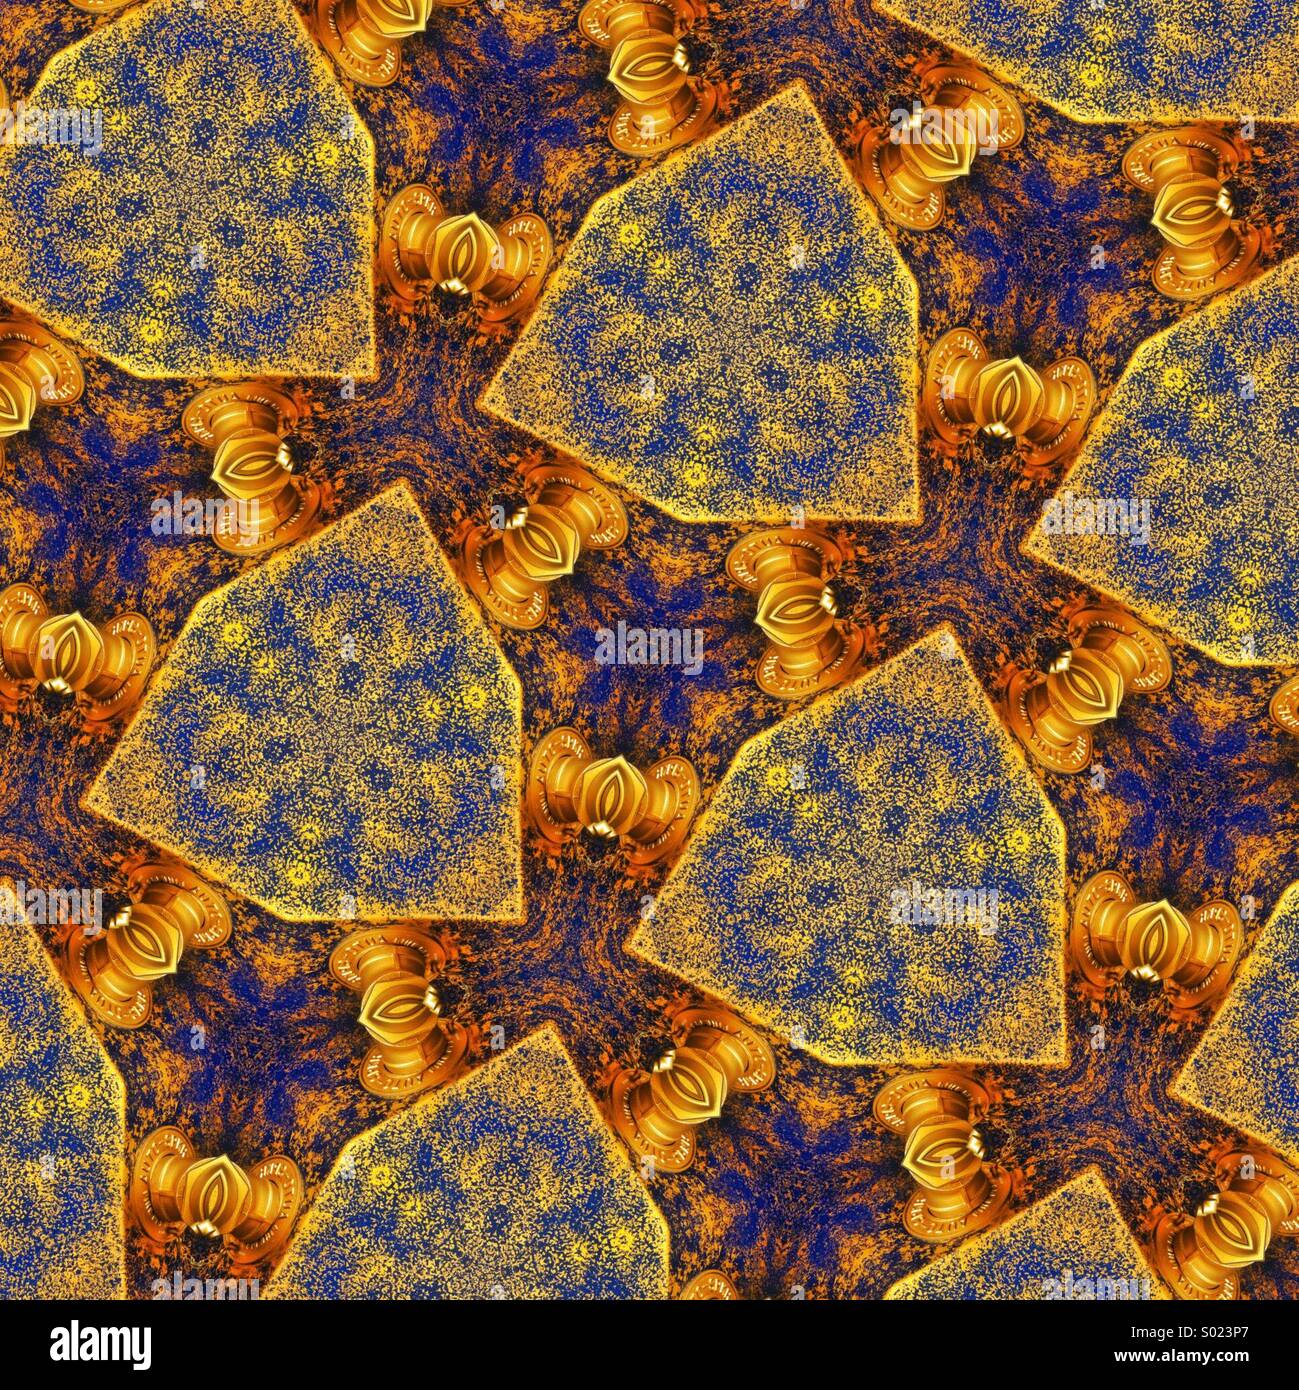 Ein Auge erfreulich kaleidoskopartige Muster in brillanten Gold und blau Stockfoto